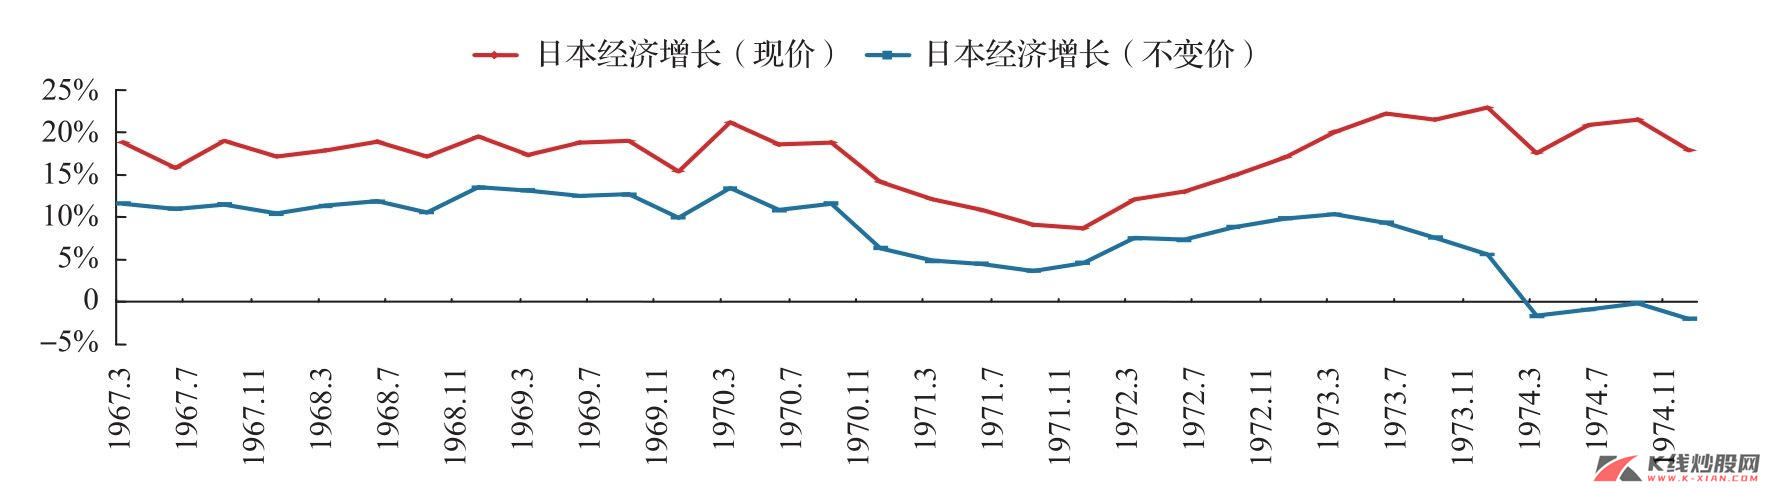 中枢下移中的日本经济增长（以2000年价格为基准）